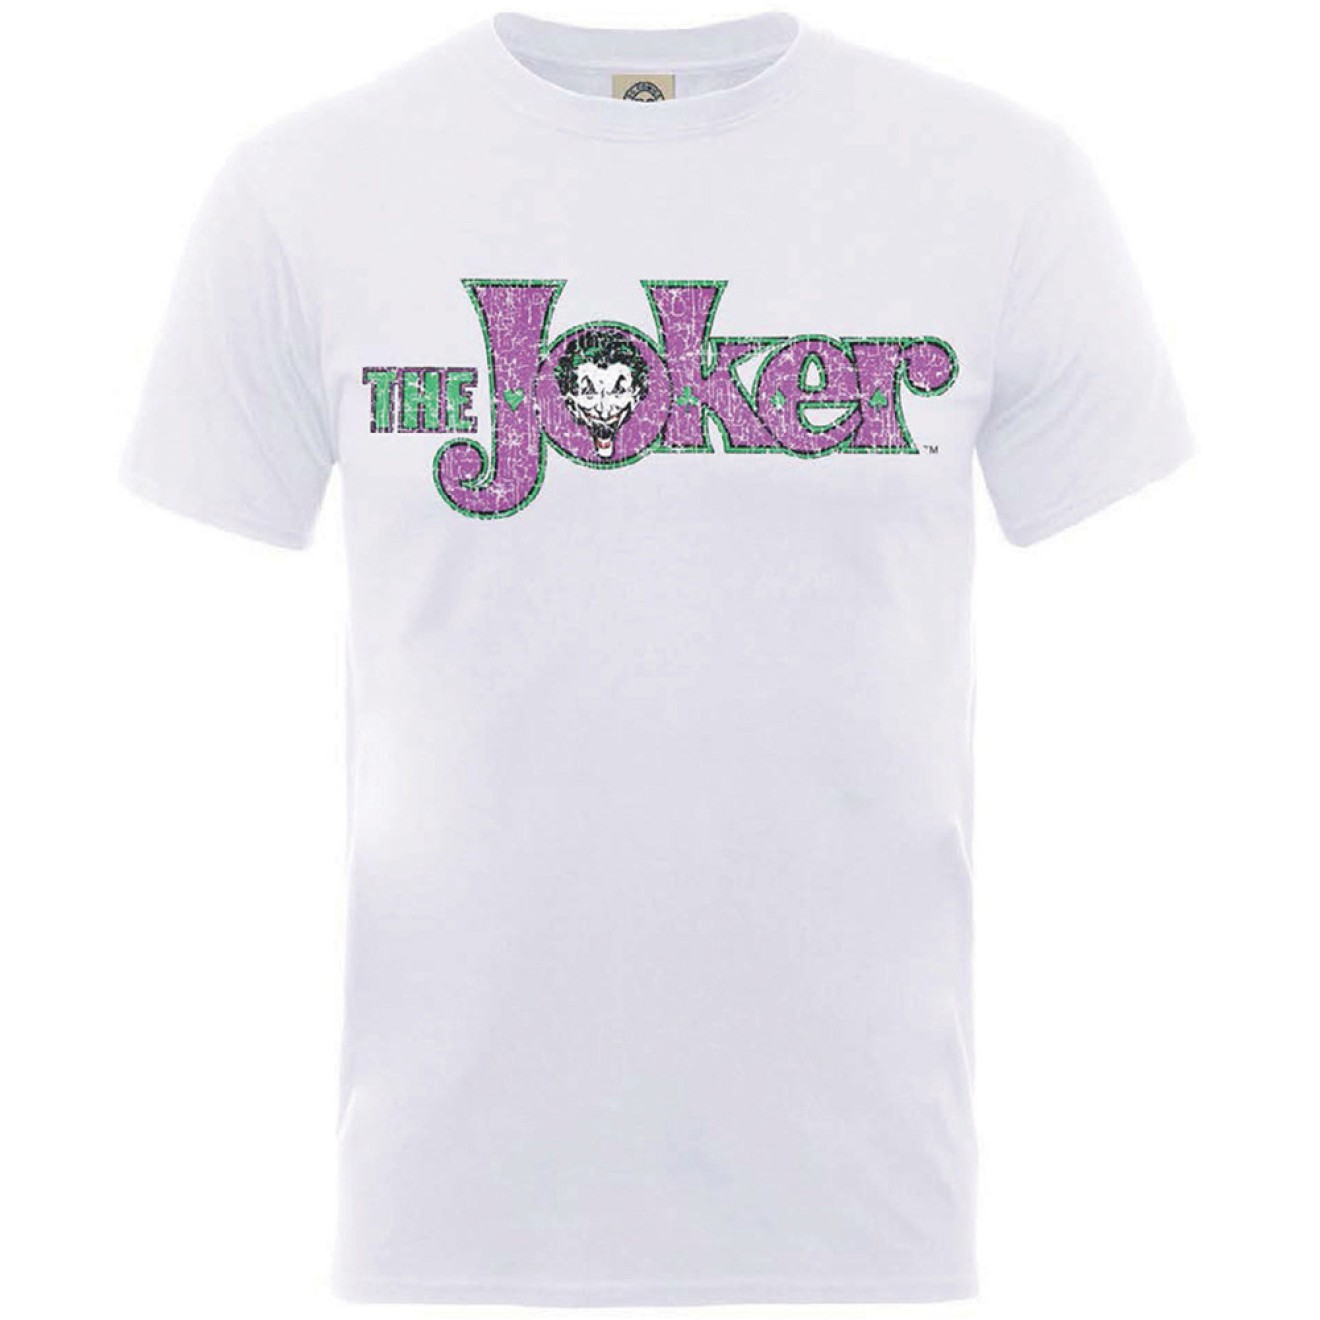 Batman - T-Shirt Joker Crackle